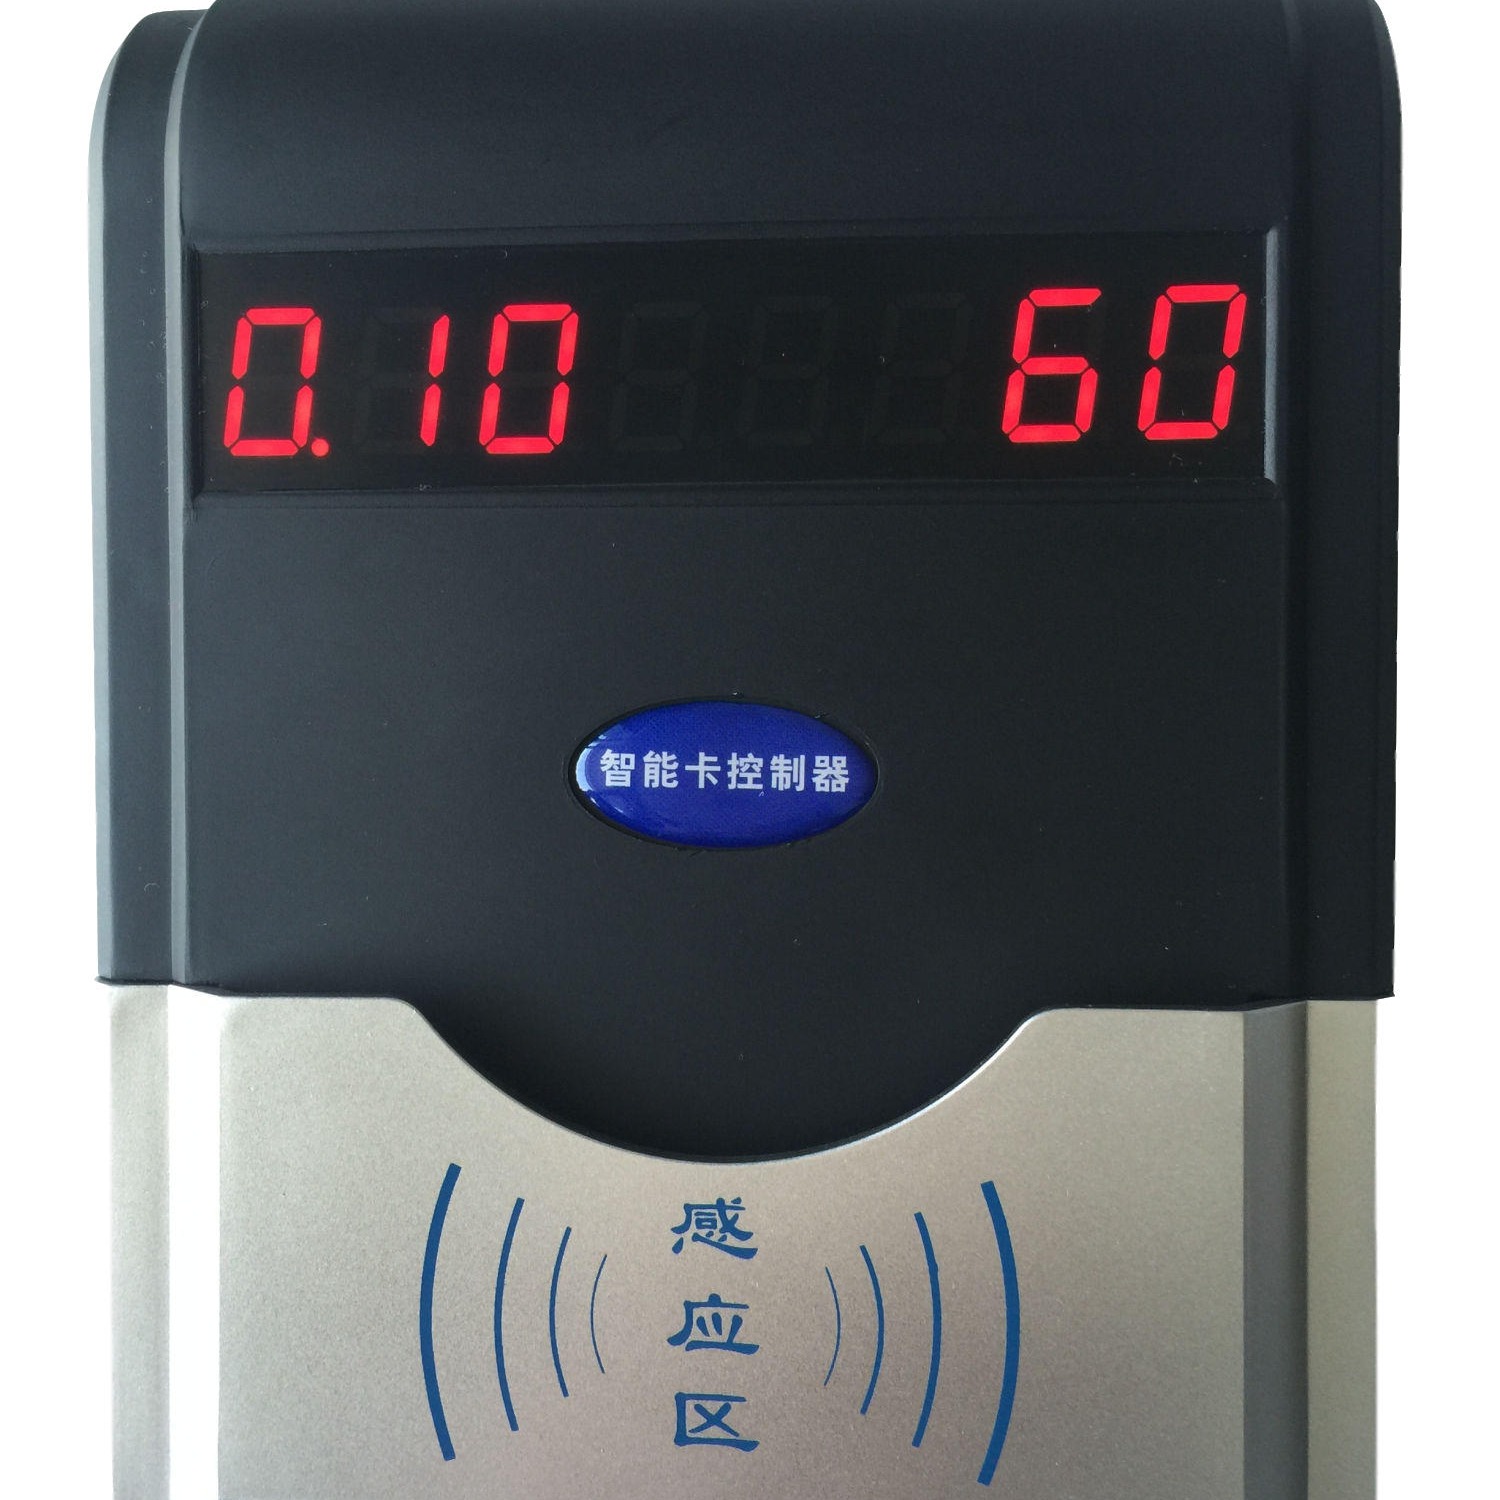 兴天下HF-660 浴室计时器IC卡淋浴水控器,浴室淋浴刷卡水控器